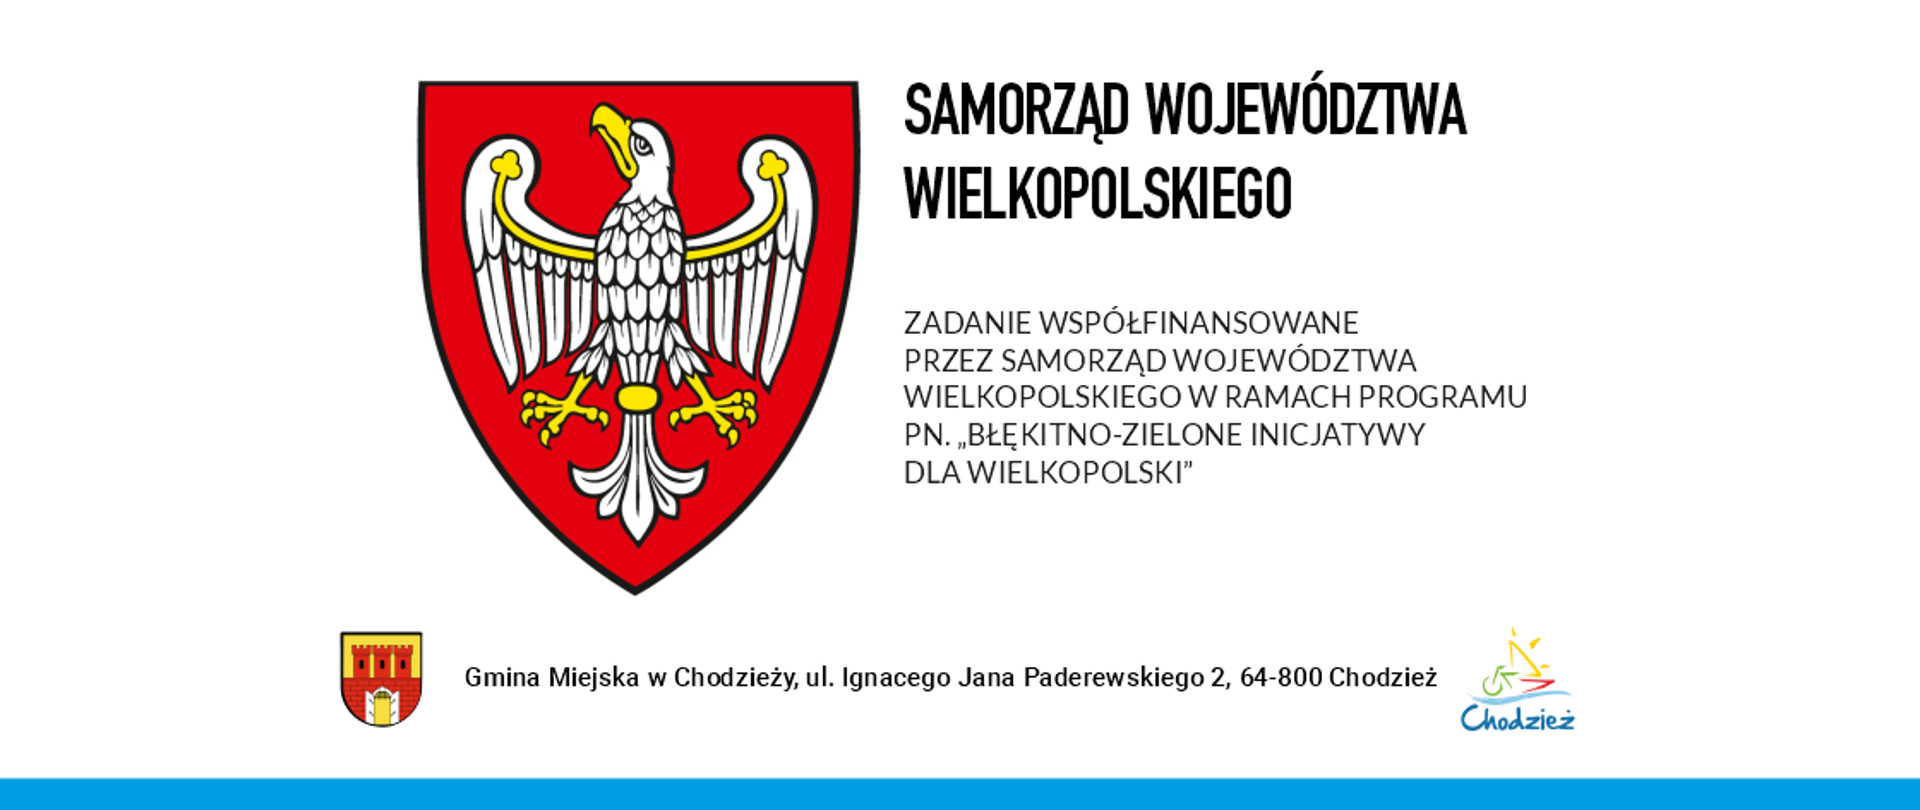 Tablica informacyjna Samorządu Województwa Wielkopolskiego/nazwa projektu/ logo i herb Gminy Miejskiej w Chodzieży 